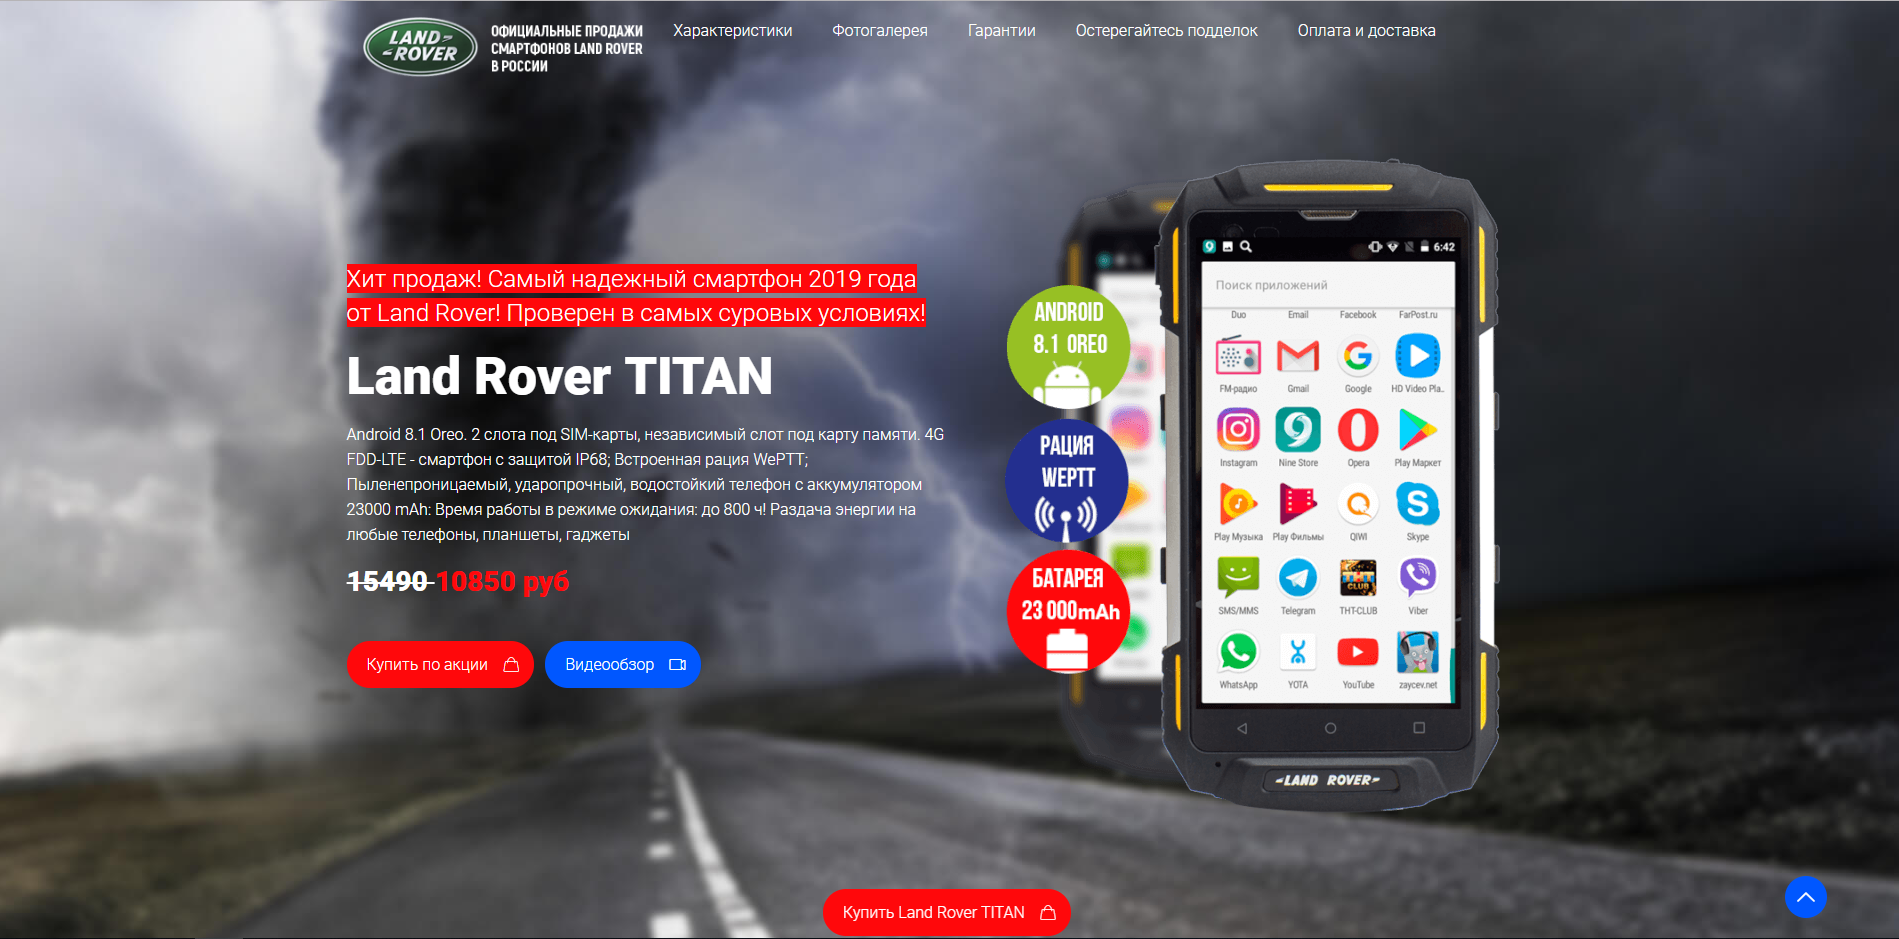 land rover телефоны официальный сайт отзывы мфо с улучшением кредитной истории